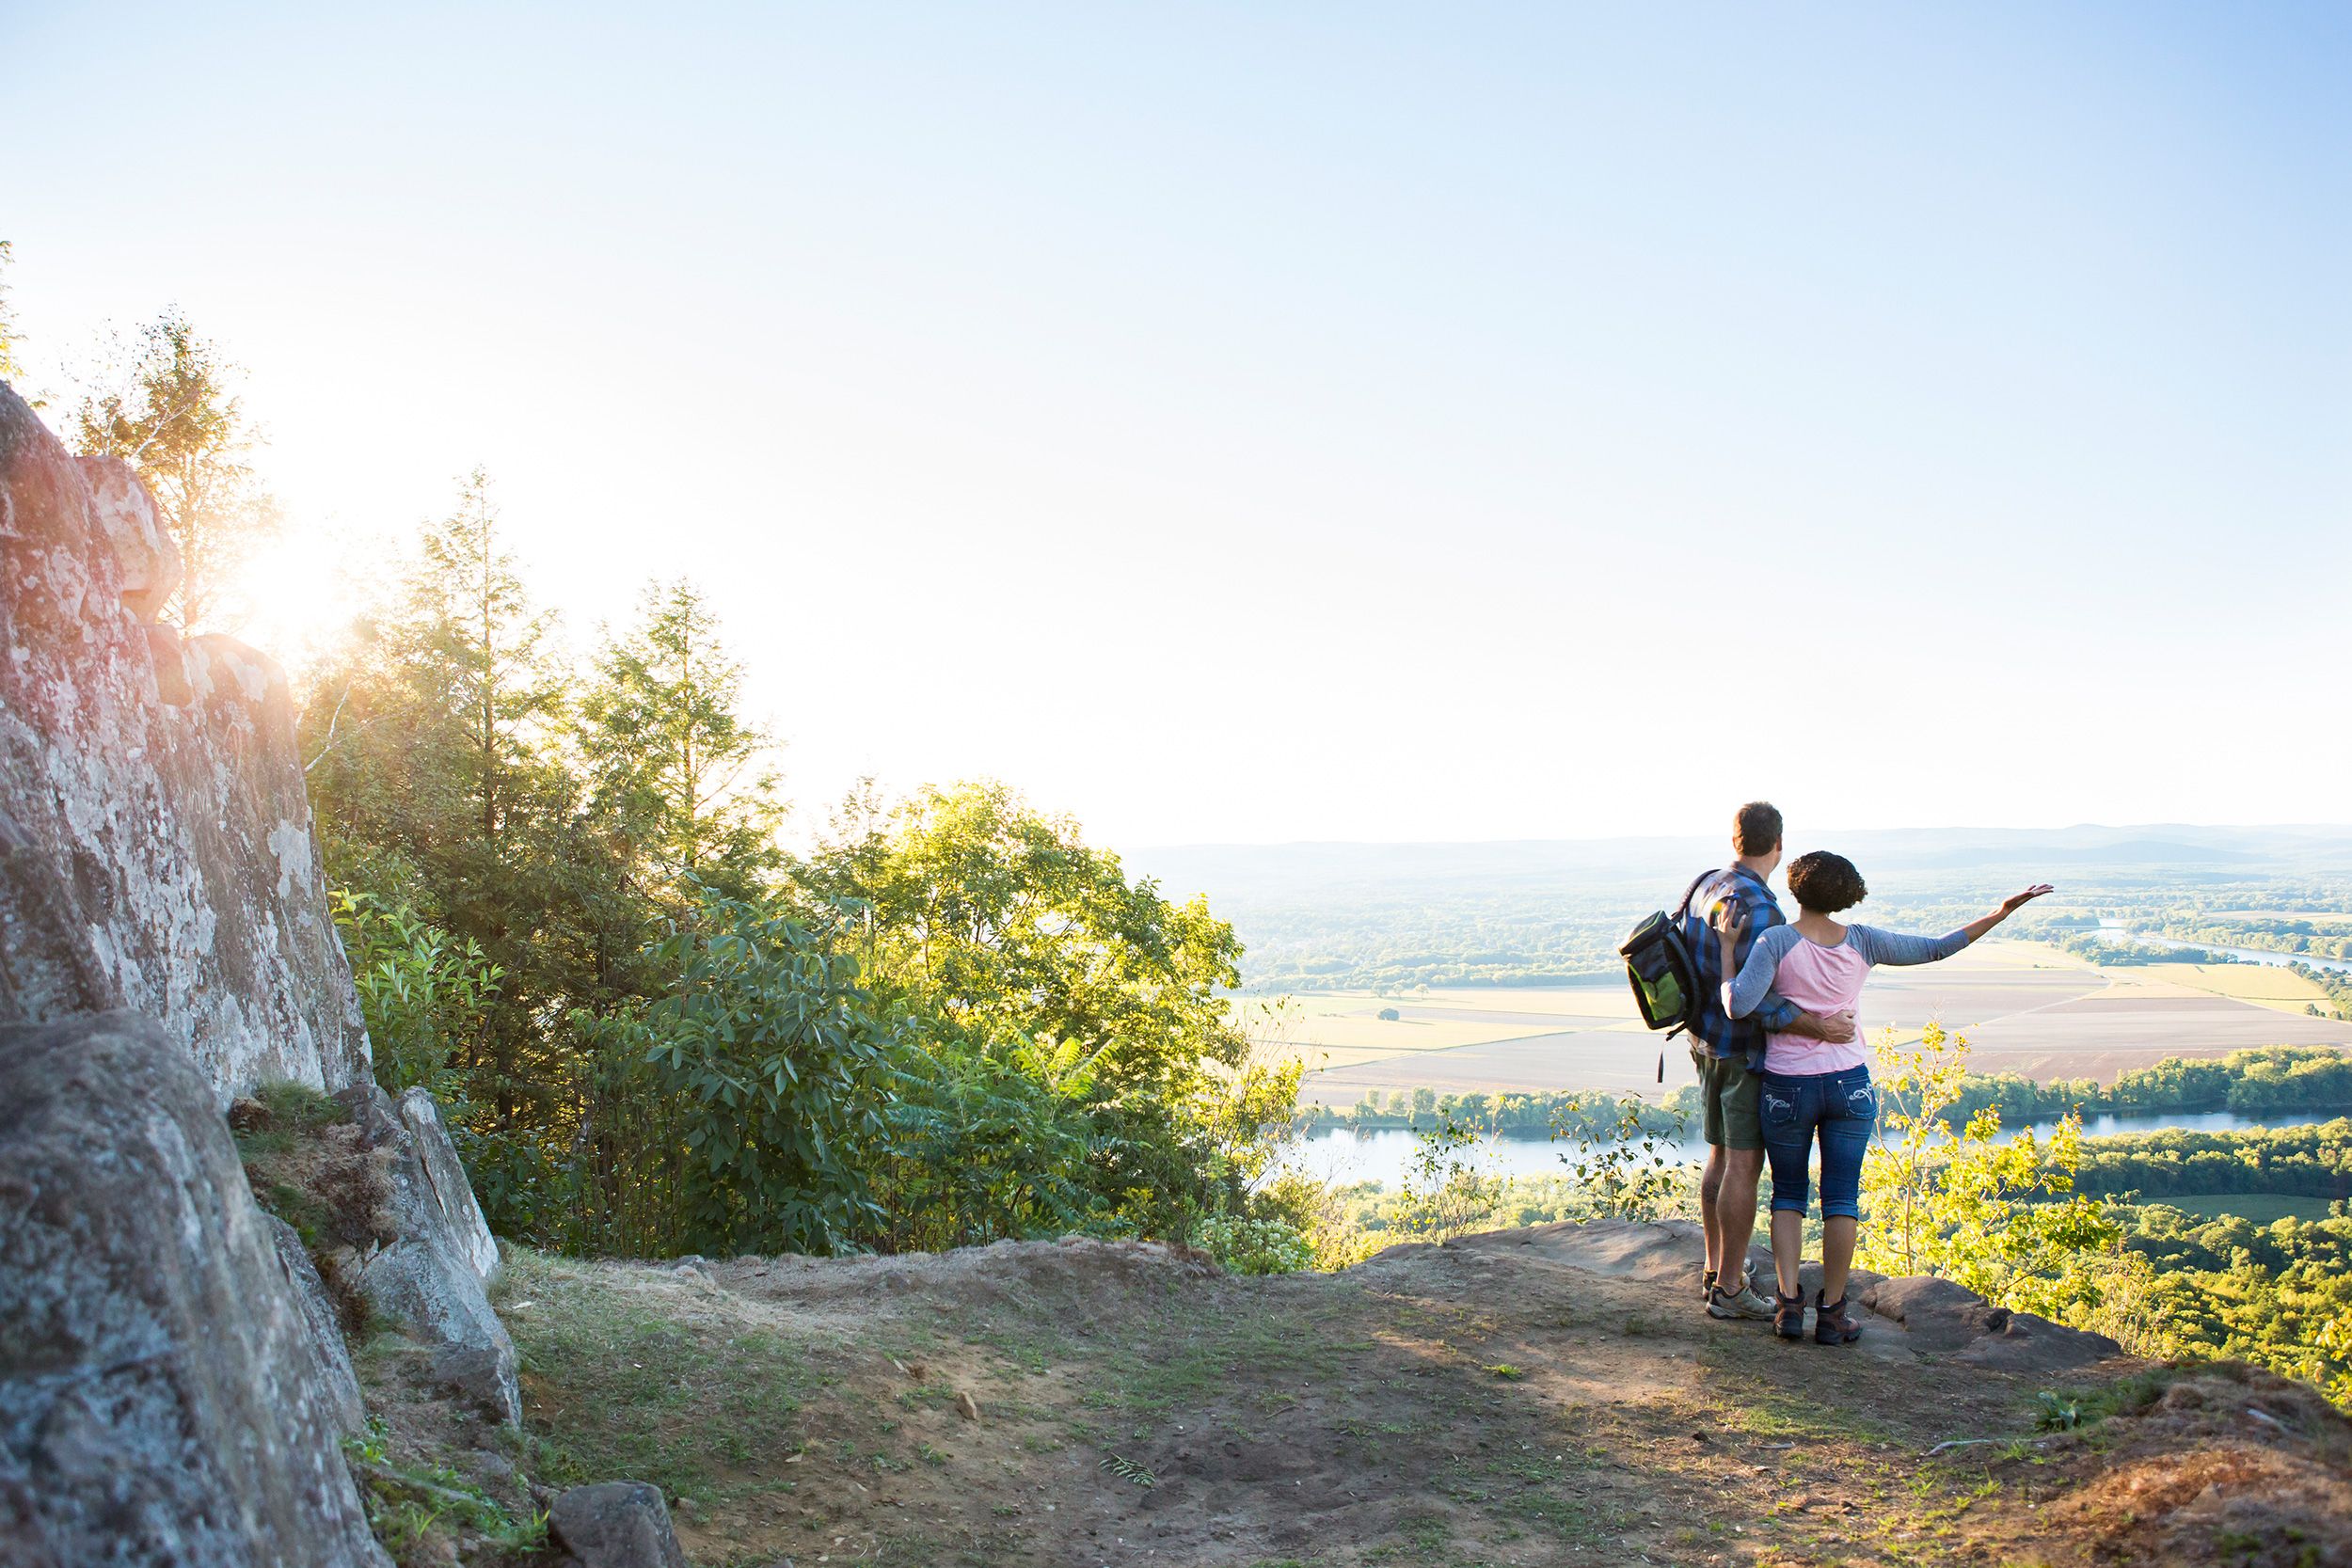 Take a hike on Skinner Mountain and enjoy the Western MA vistas!